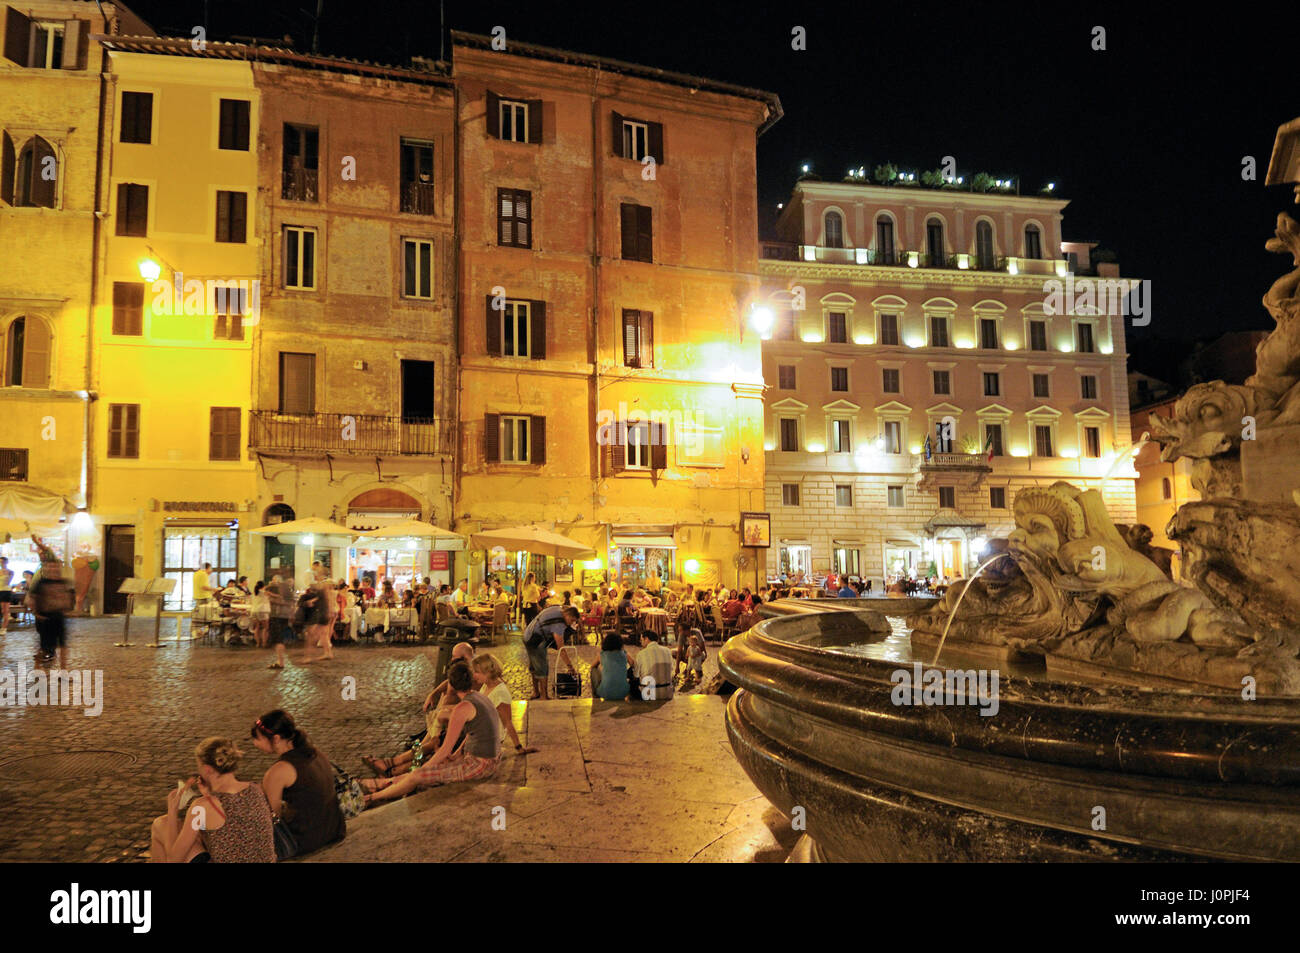 Piazza Della Rotonda, Rome, Italy, Europe Stock Photo